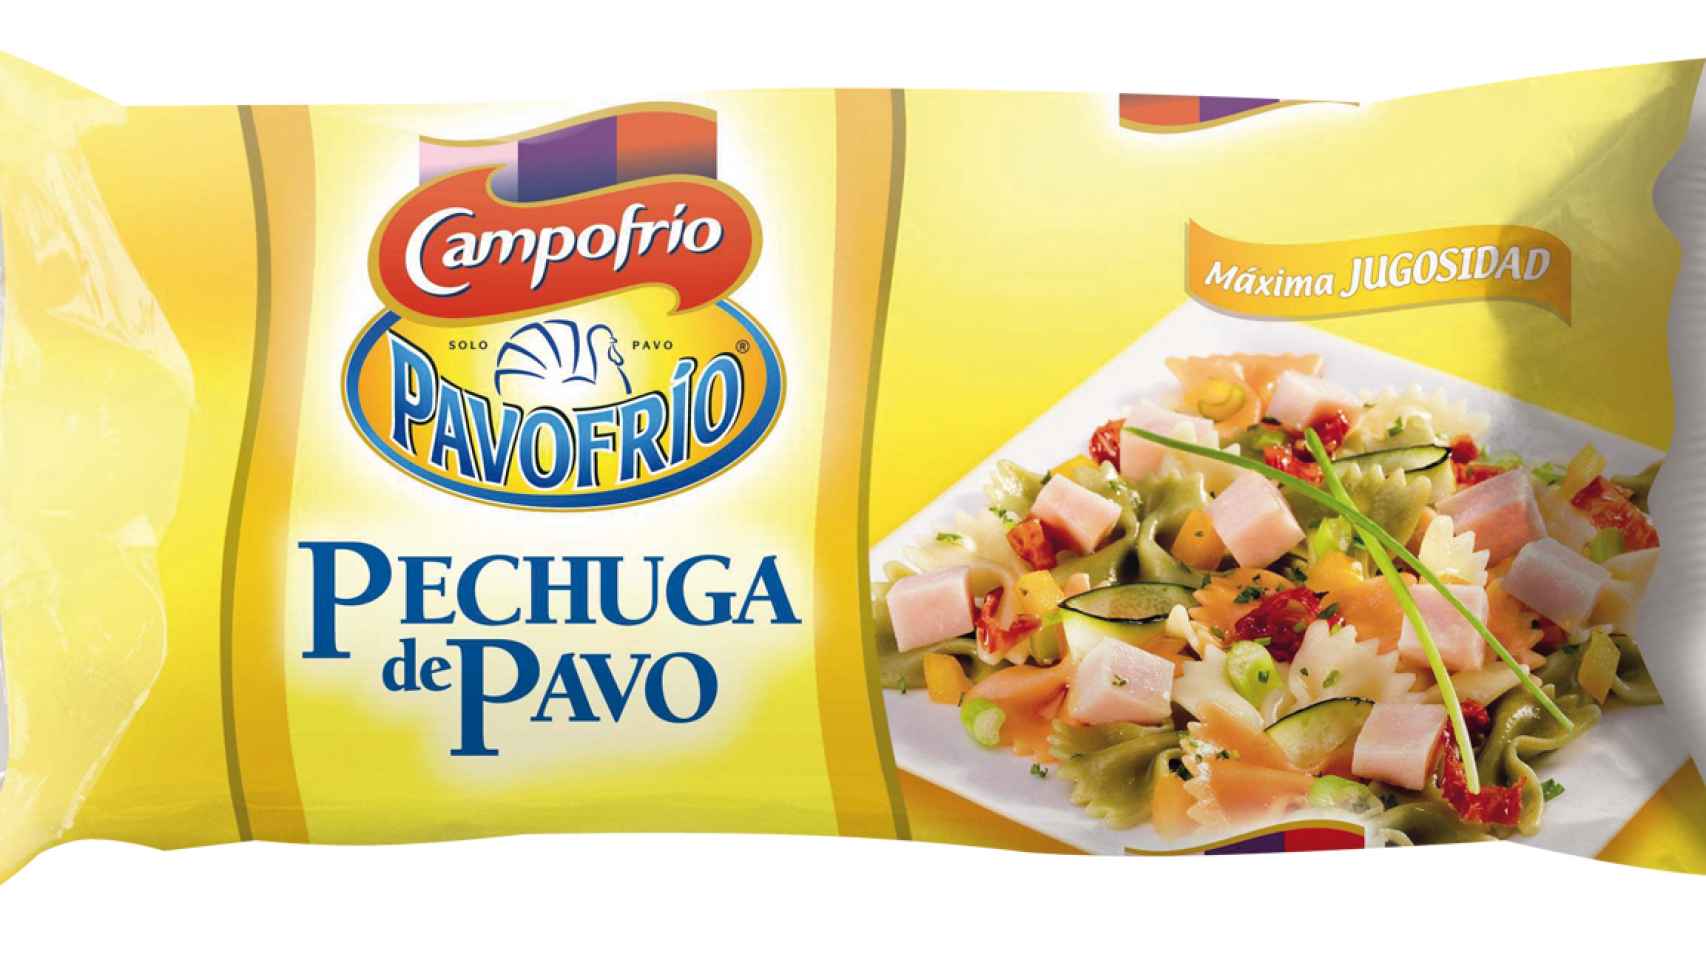 Campofrío tiene una amplia gama de productos de pavo